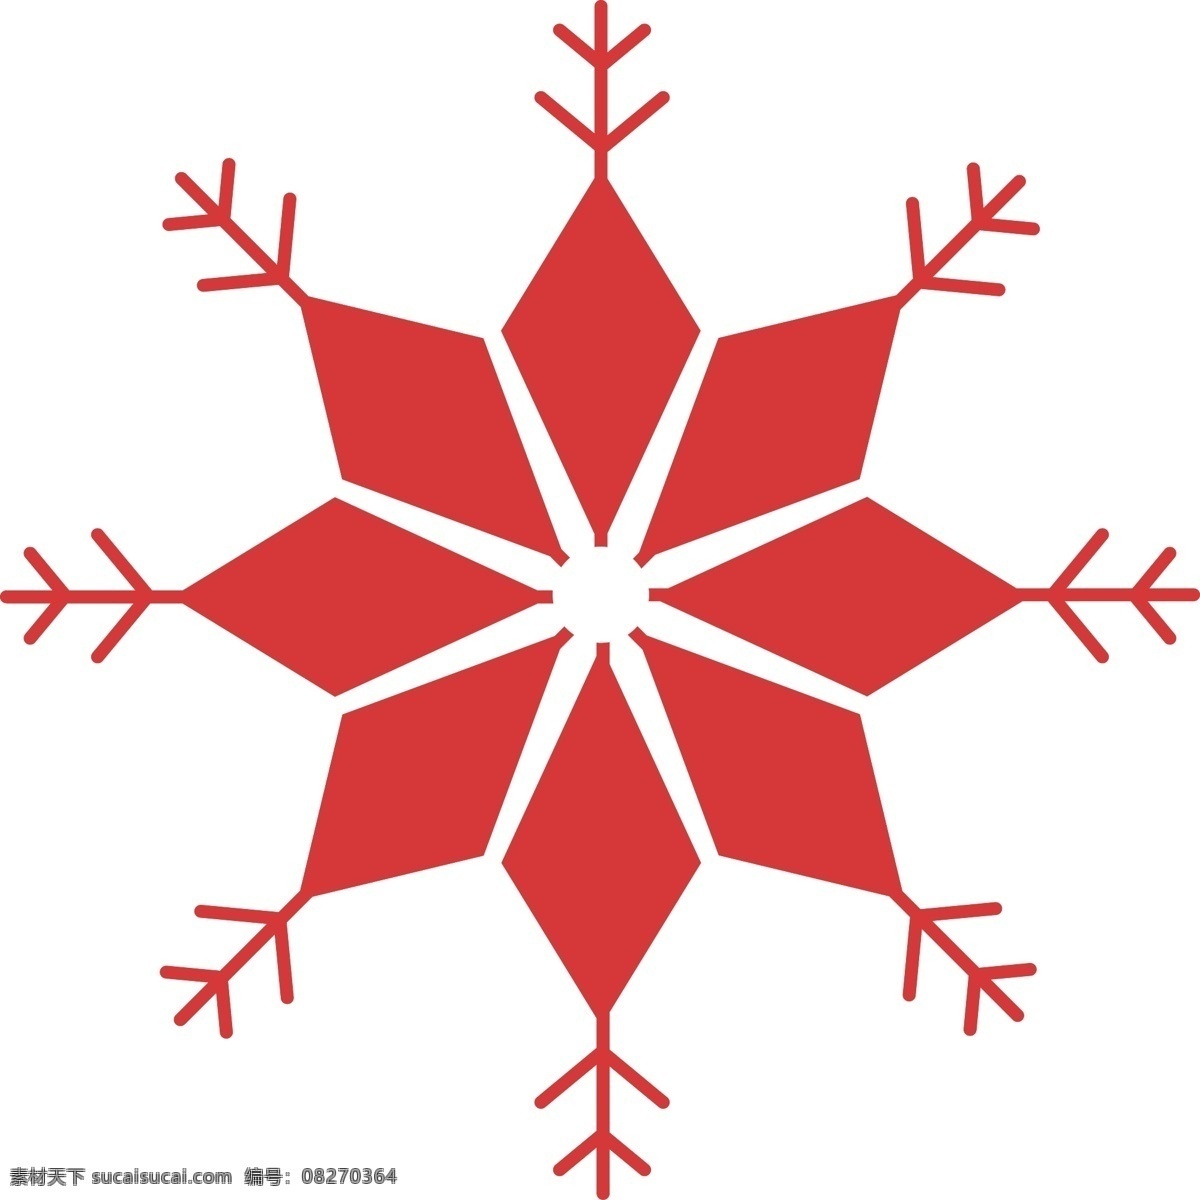 圣诞节 红色 圣诞 雪花 元素 图案 装饰 圣诞雪花 元素图案 装饰图案